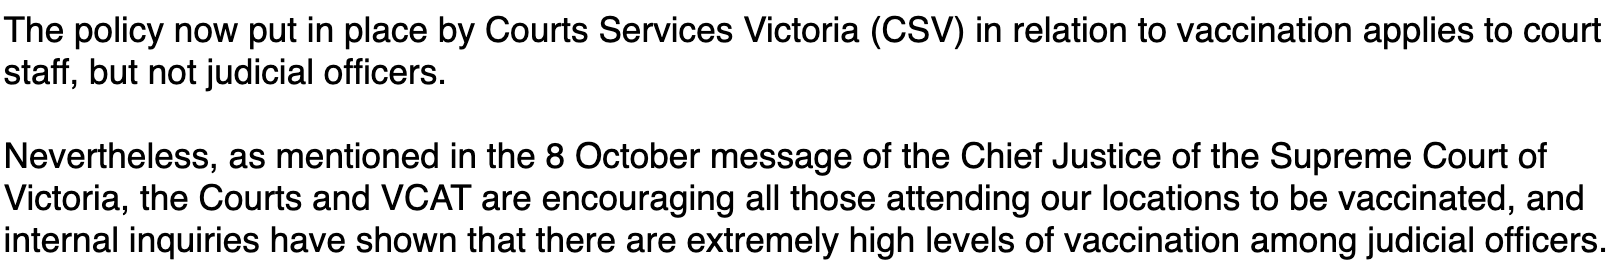 Auszug aus der E-Mail eines Pressesprechers des Obersten Gerichtshofs des australischen Bundesstaates Victoria